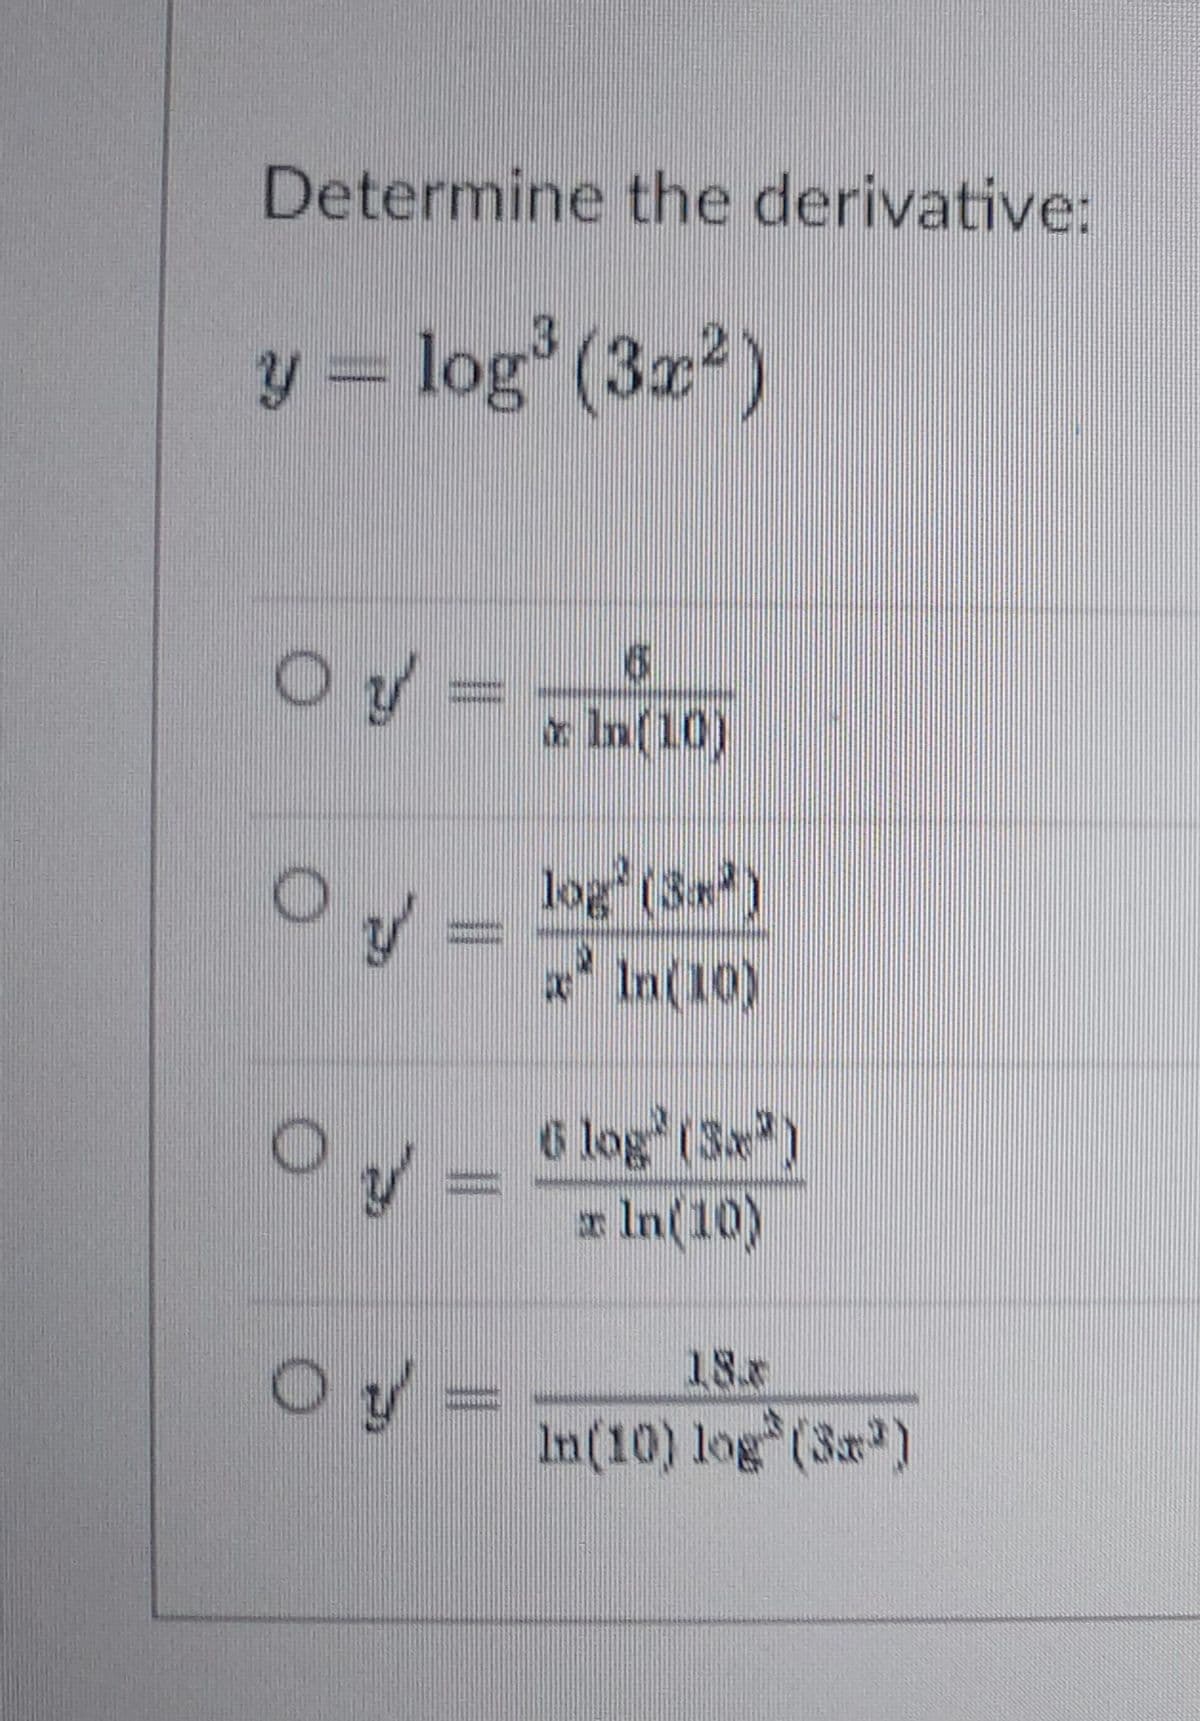 Determine the derivative:
y = log (3x2)
O y =
=-
* In(10)
log (3*)
(01) ण , य
6 log (3)
x In(10)
Oy=
18x
In(10) log (3a)
